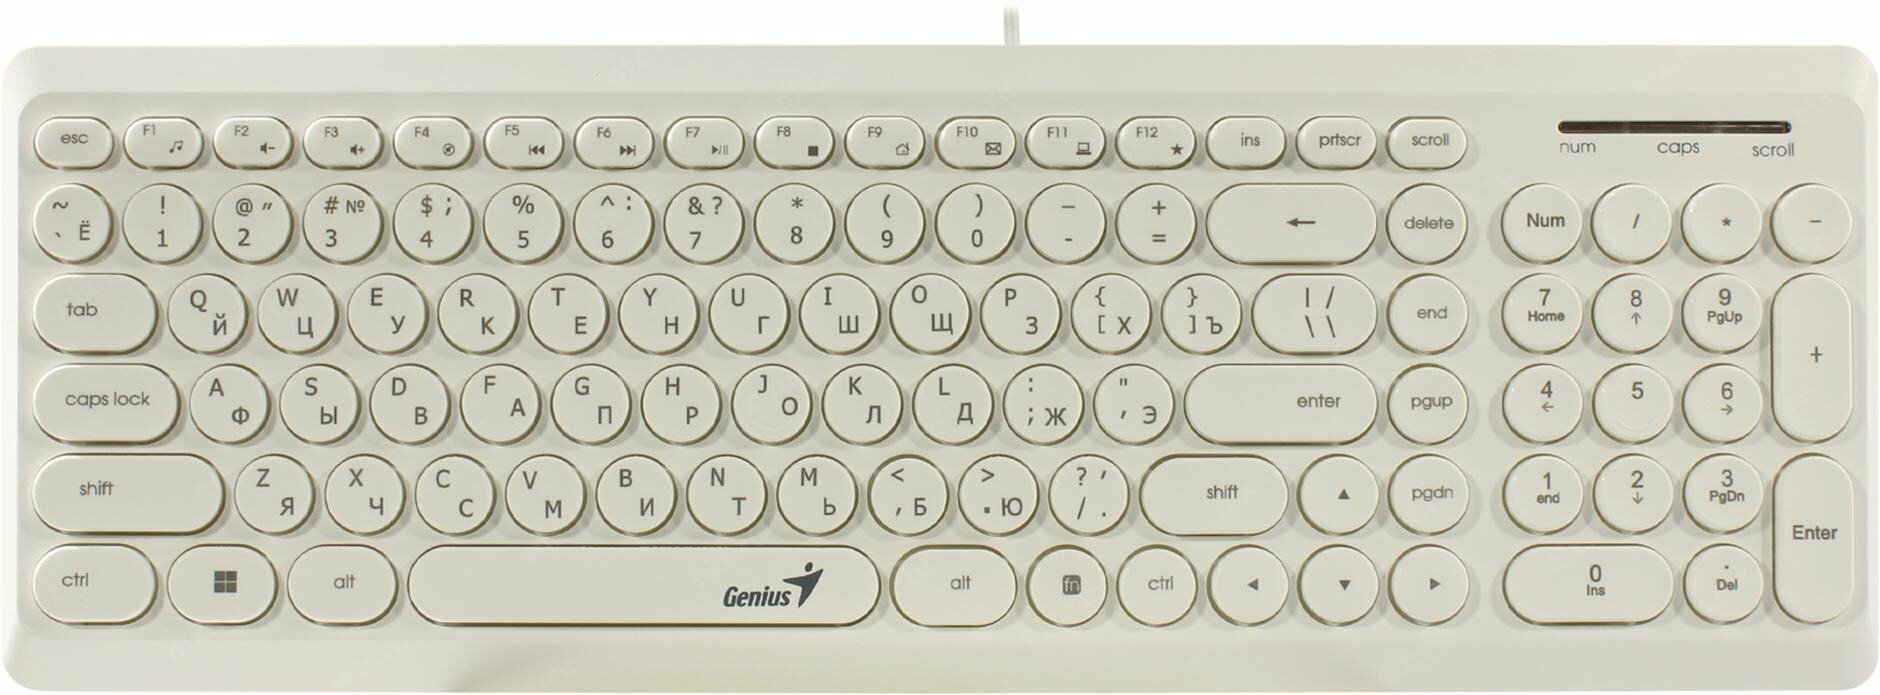 Клавиатура проводная мультимедийная Genius SlimStar Q200 12 мультимидийных круглых клавиш USB под